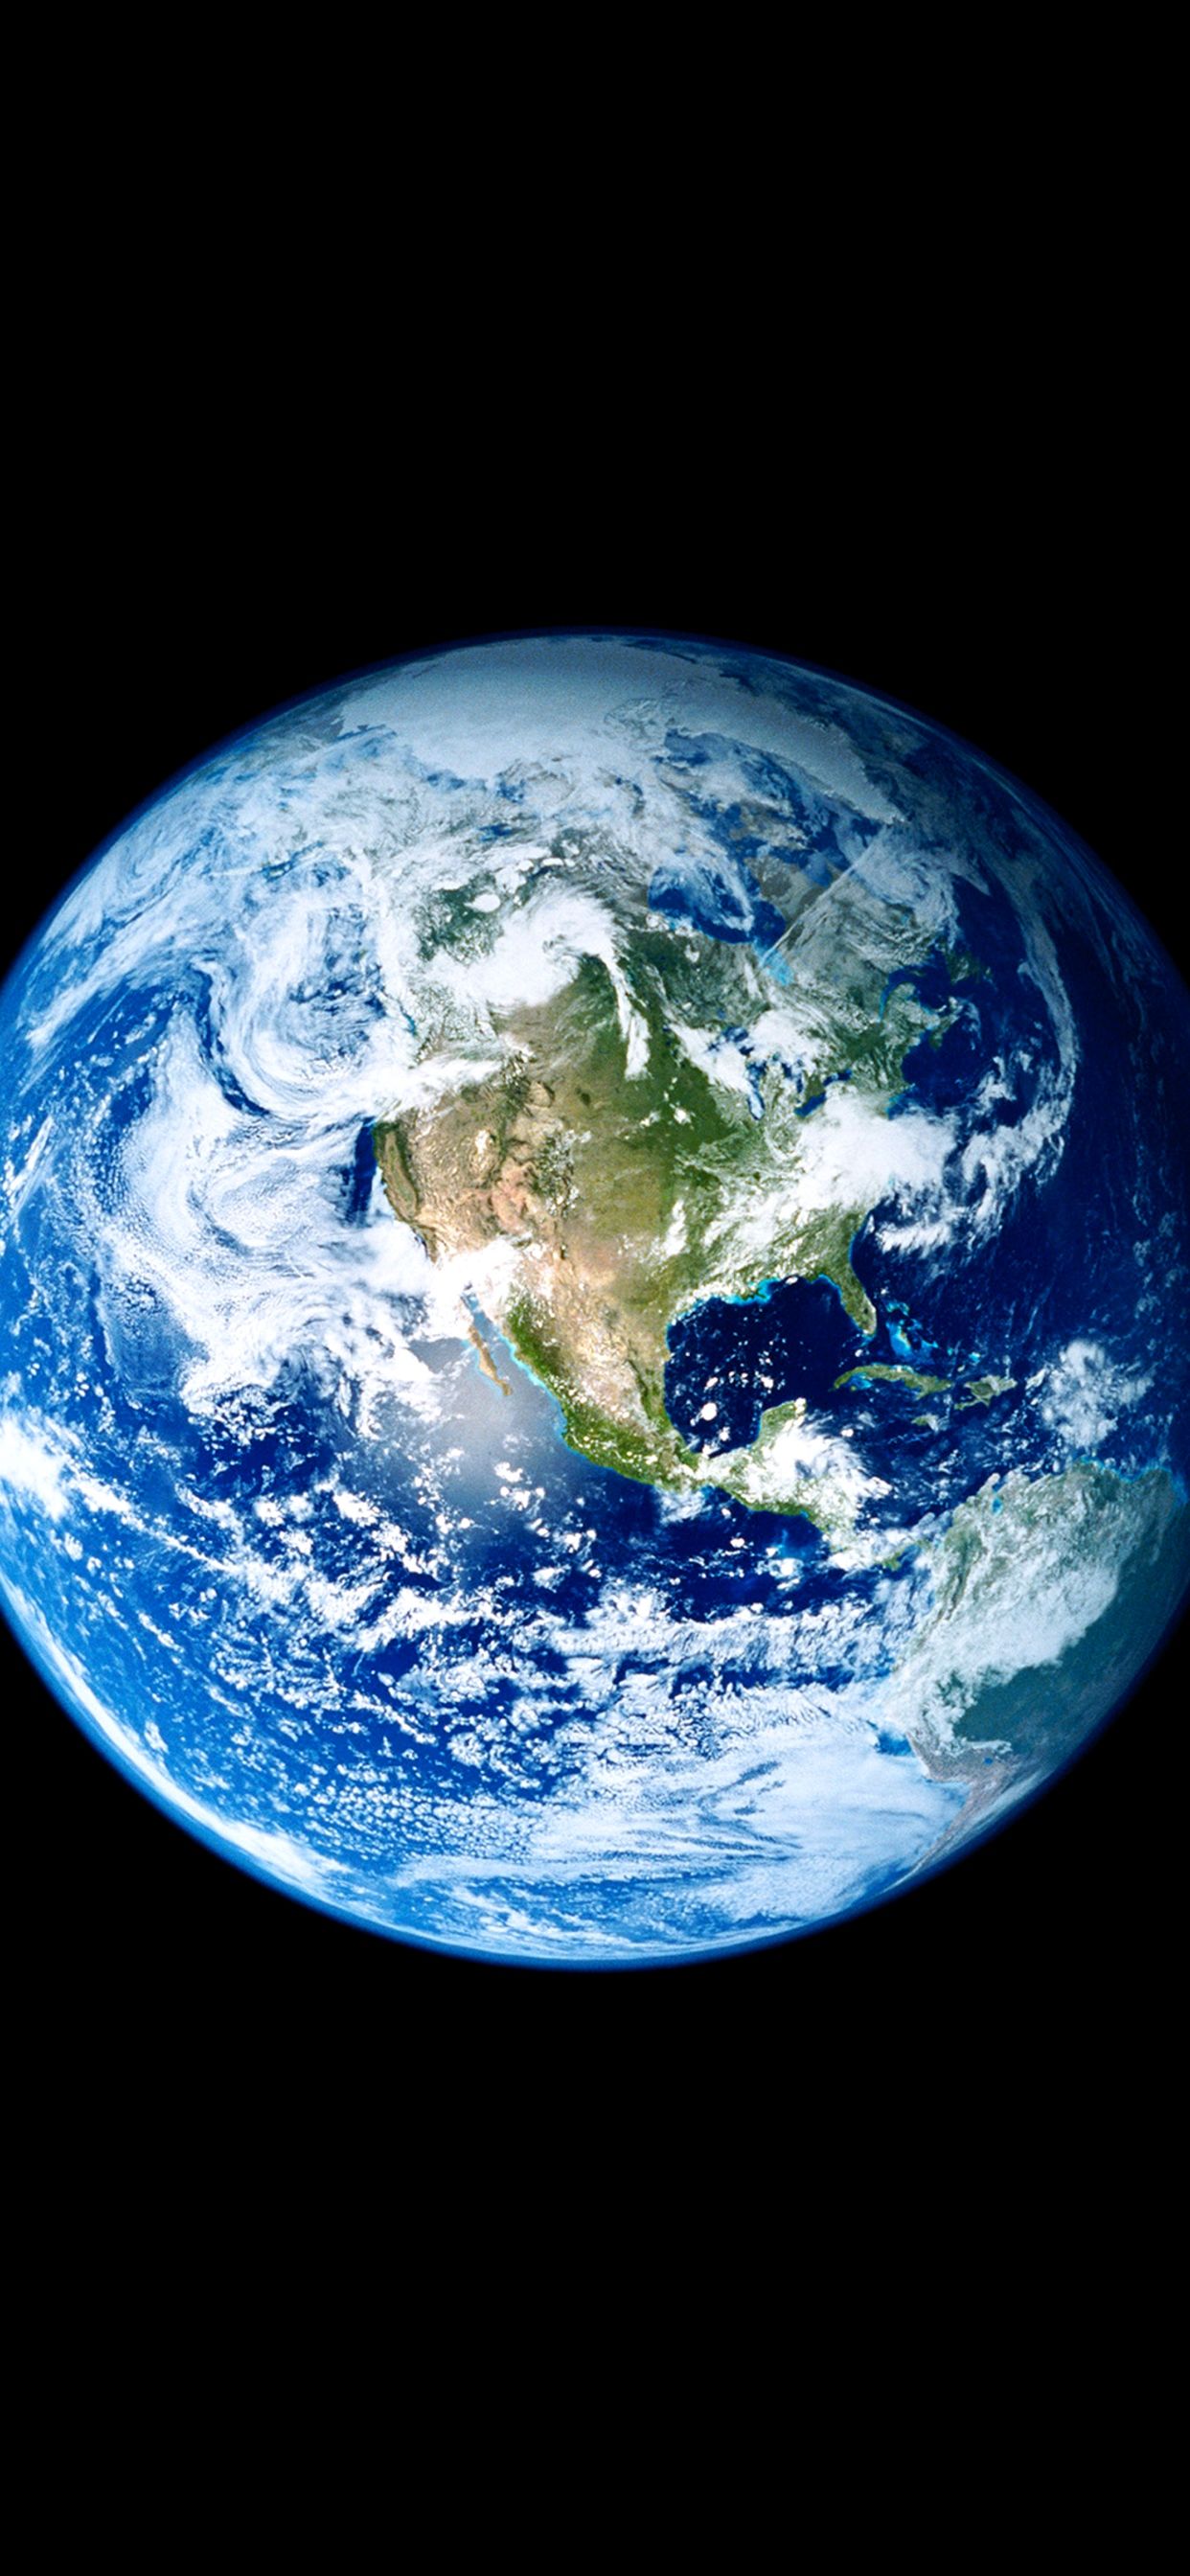 iPhone Earth Wallpaper 4K Download Gallery. おしゃれな壁紙背景, 宇宙から見た地球, 壁紙